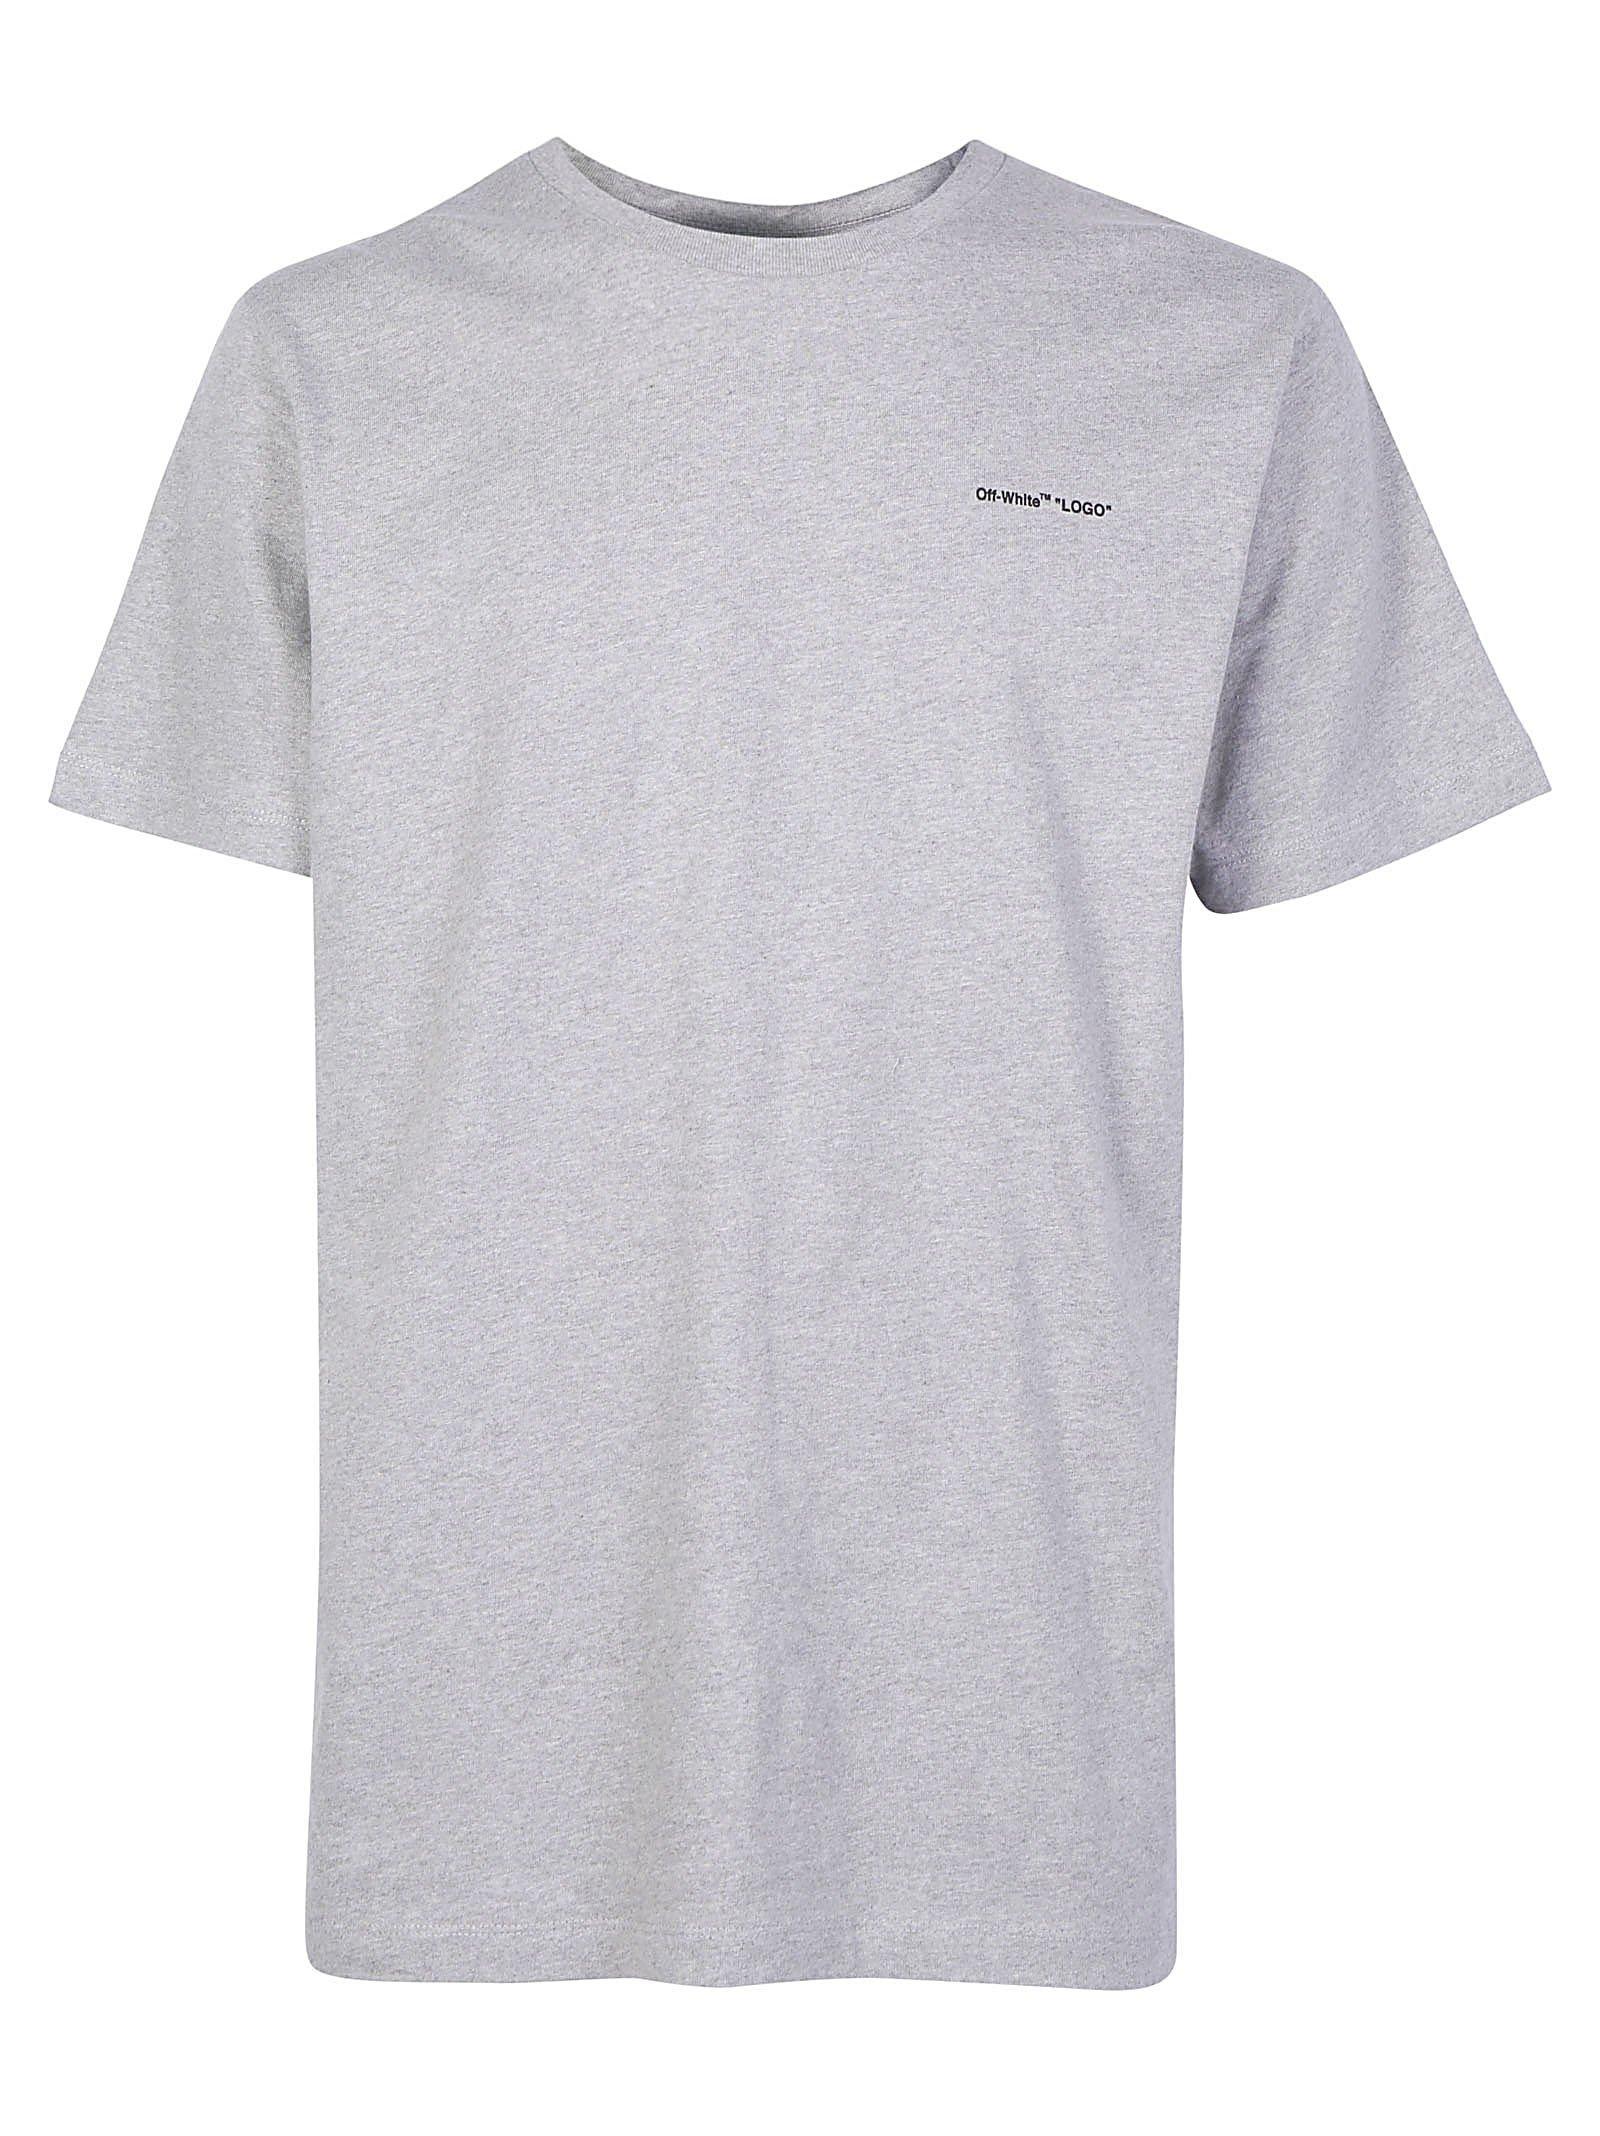 Off-White c/o Virgil Abloh Logo Slim Fit T-shirt in Gray for Men - Lyst